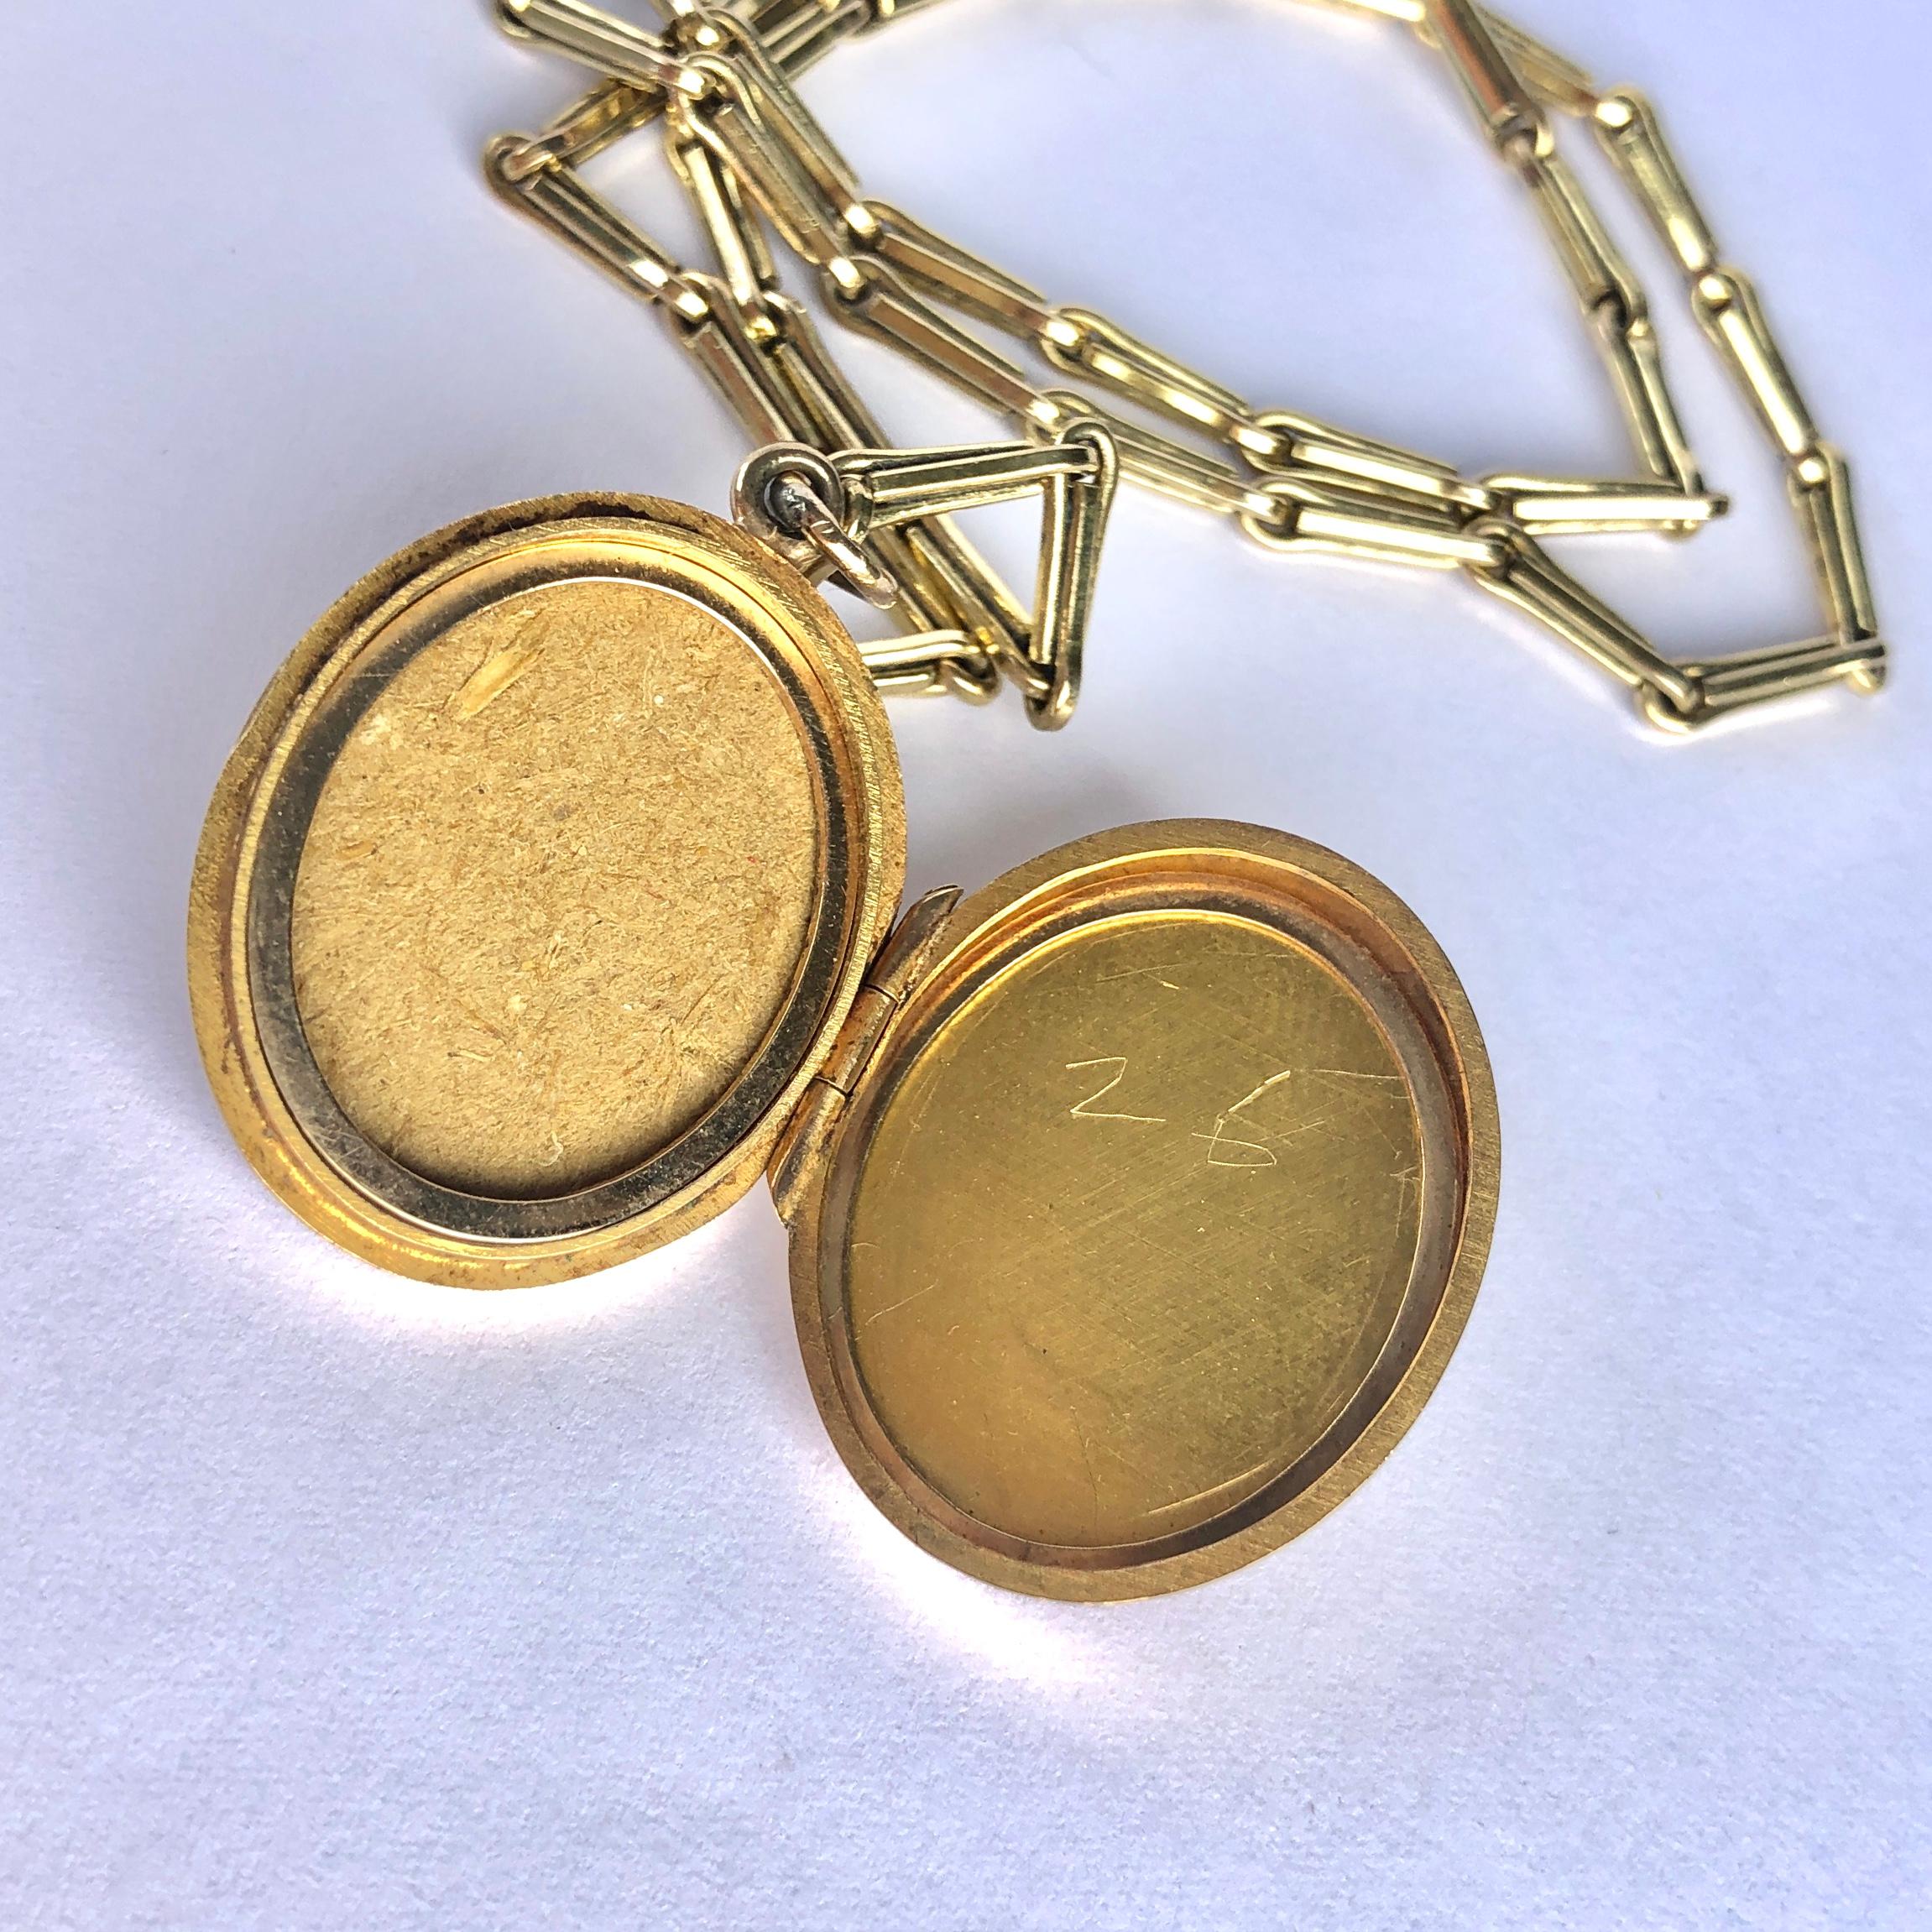 Diese wunderschöne und zarte Kette aus 9-karätigem Gold ist mit einem Verschlussclip versehen. In der Mitte befindet sich ein Medaillon an einer beweglichen Schlaufe.

Länge: 34,5 cm

Gewicht: 10,3 g